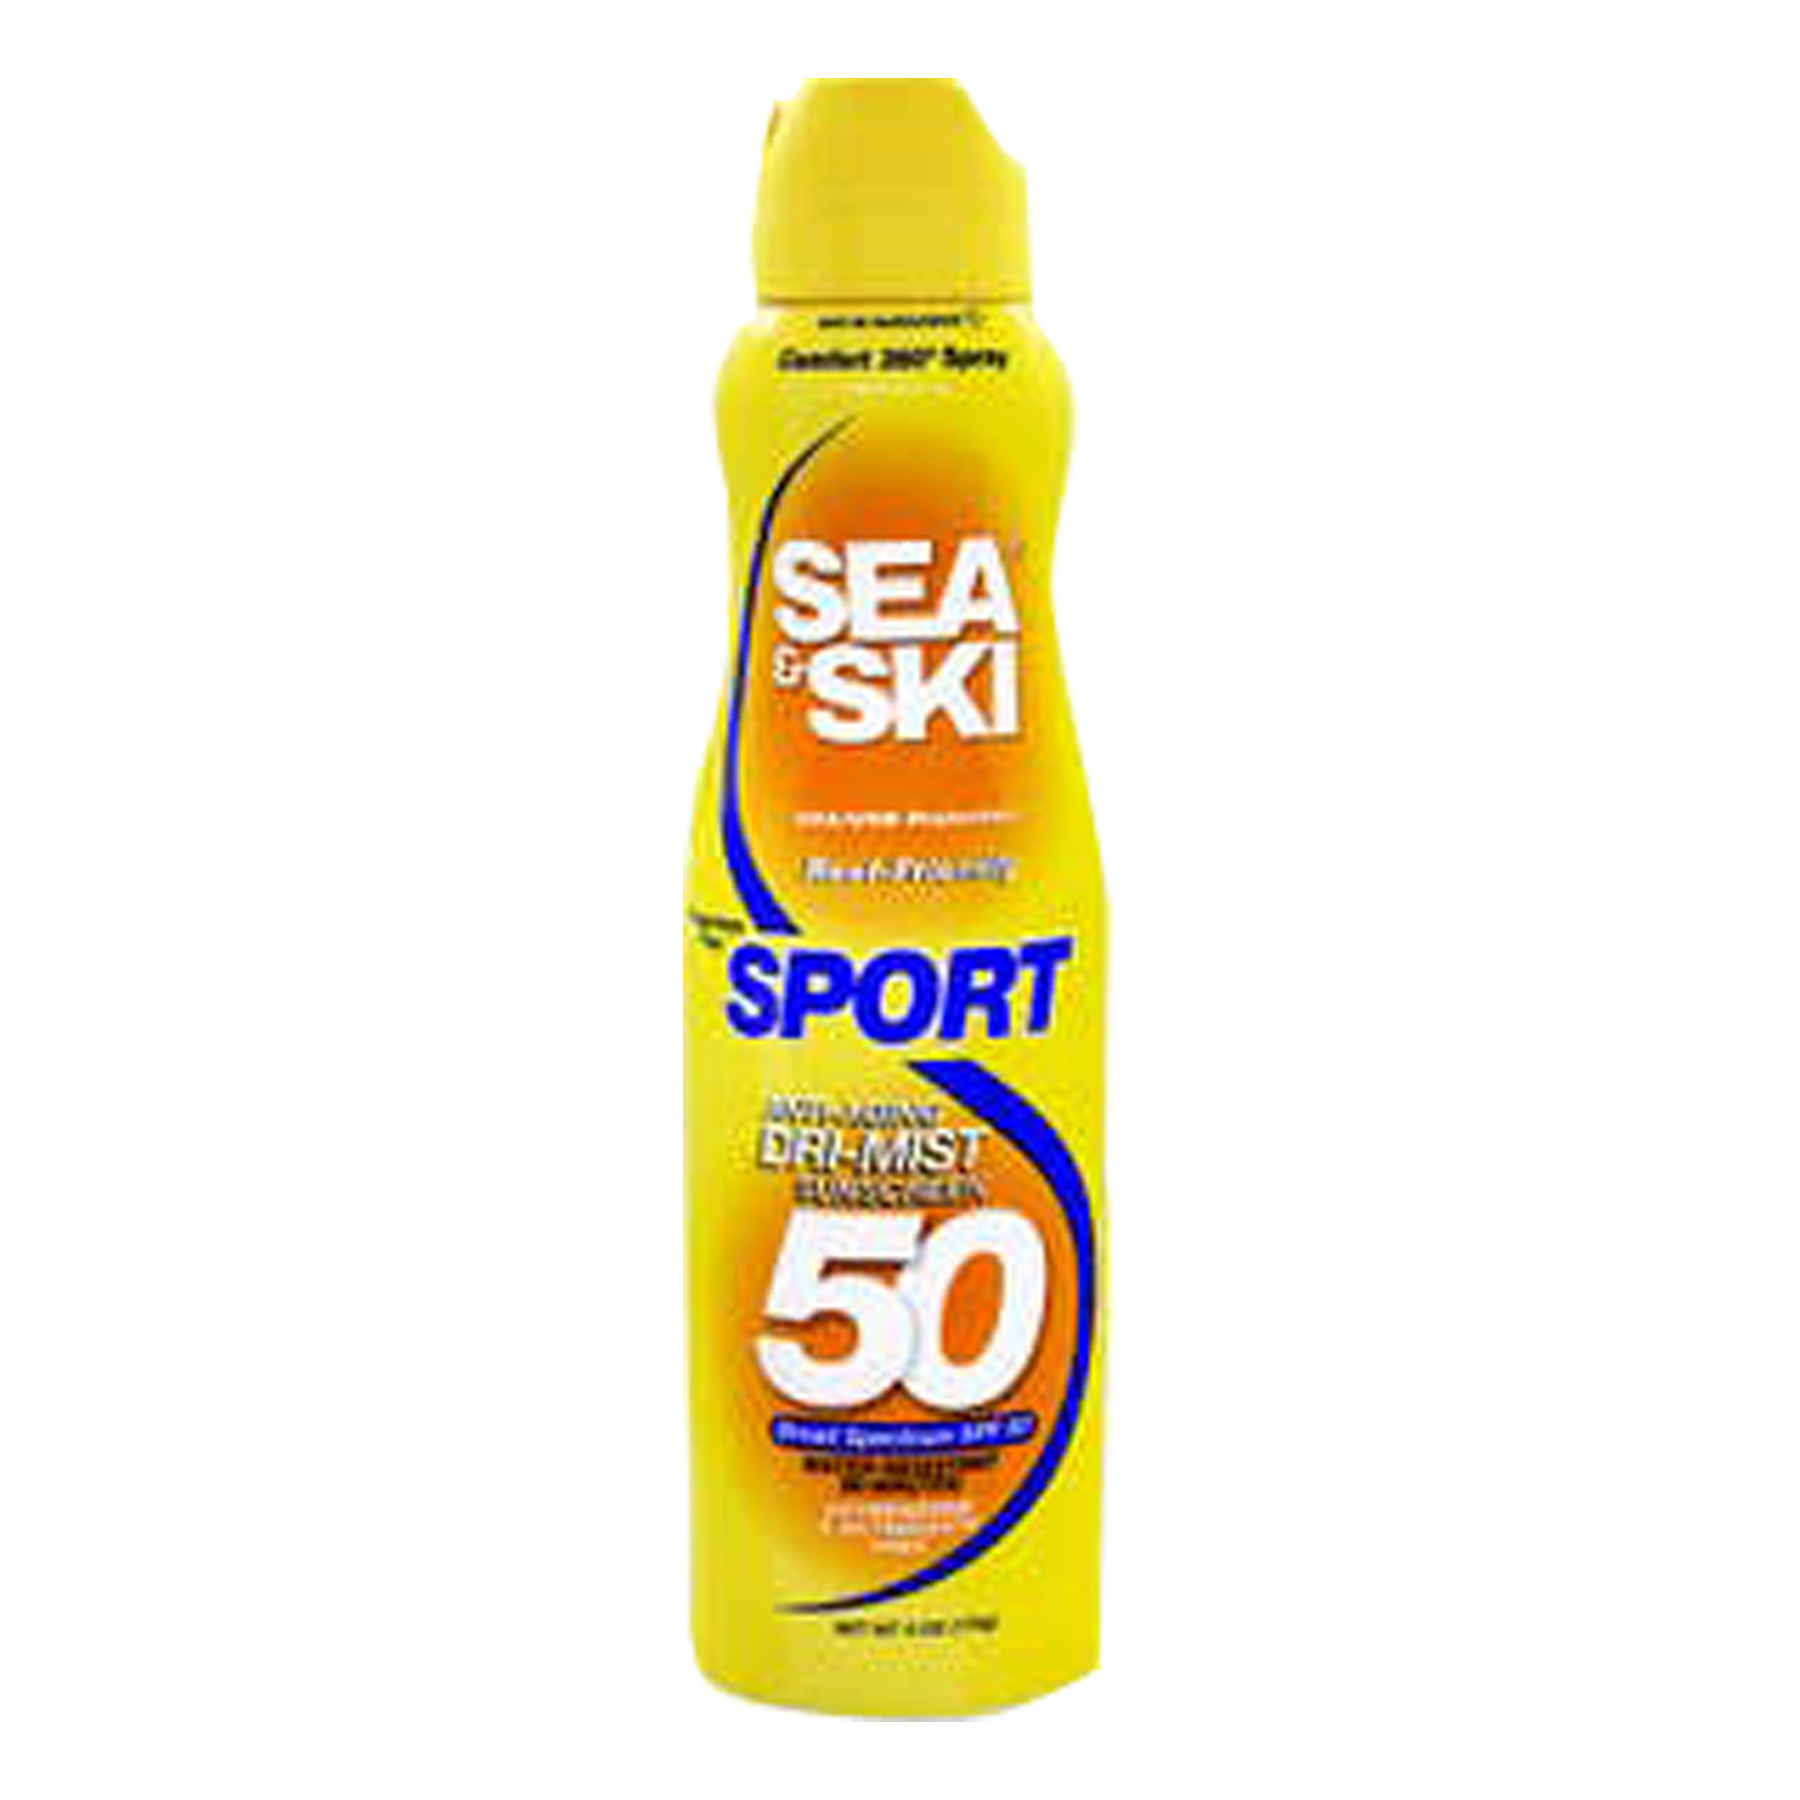 SEA & SKI SPRAY SPF 50 SPORT 6OZ